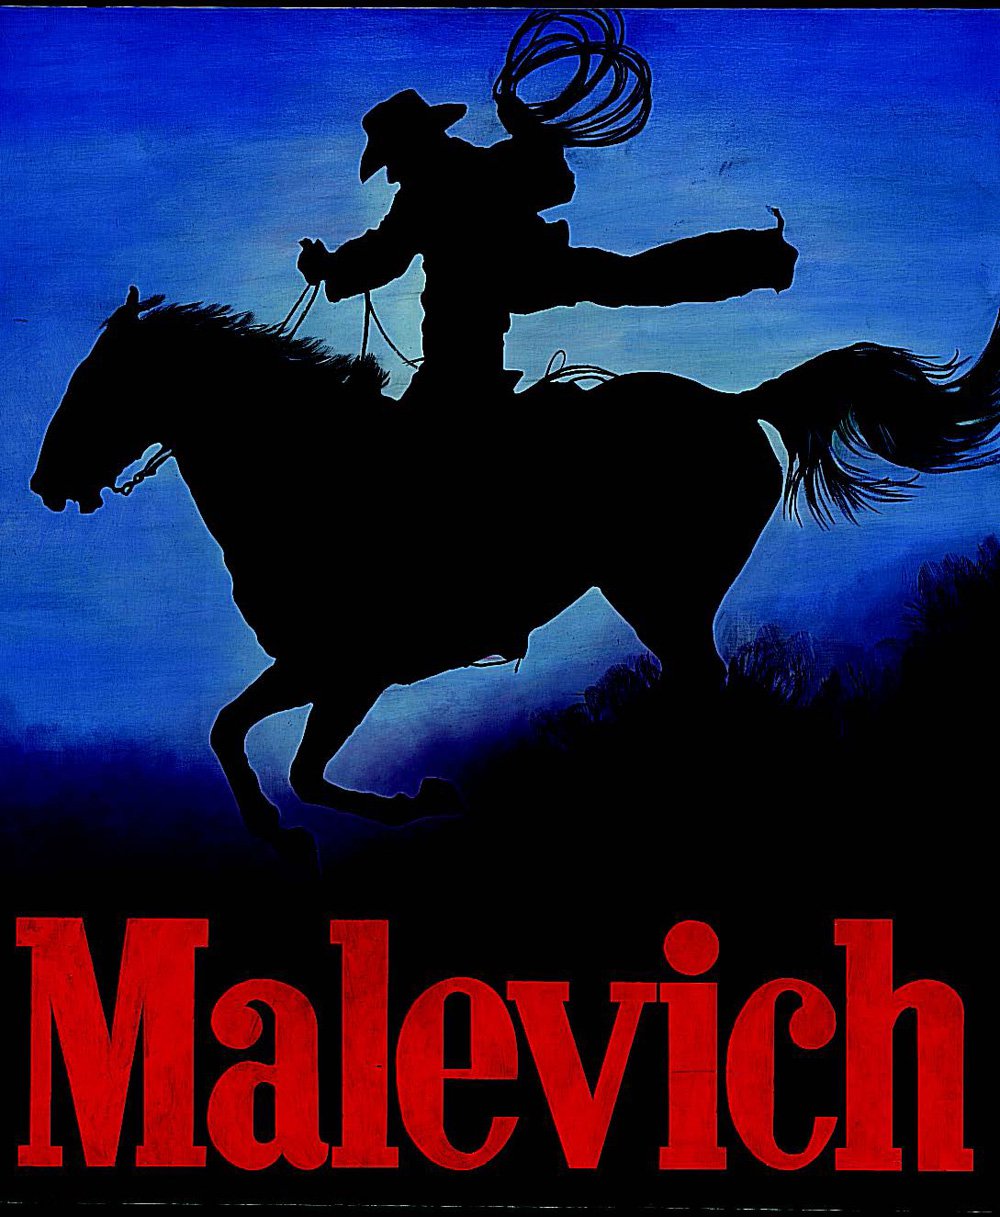 Александр Косолапов. Malevich — Маrlboro. 1997. Фото: Московский музей современного искусства